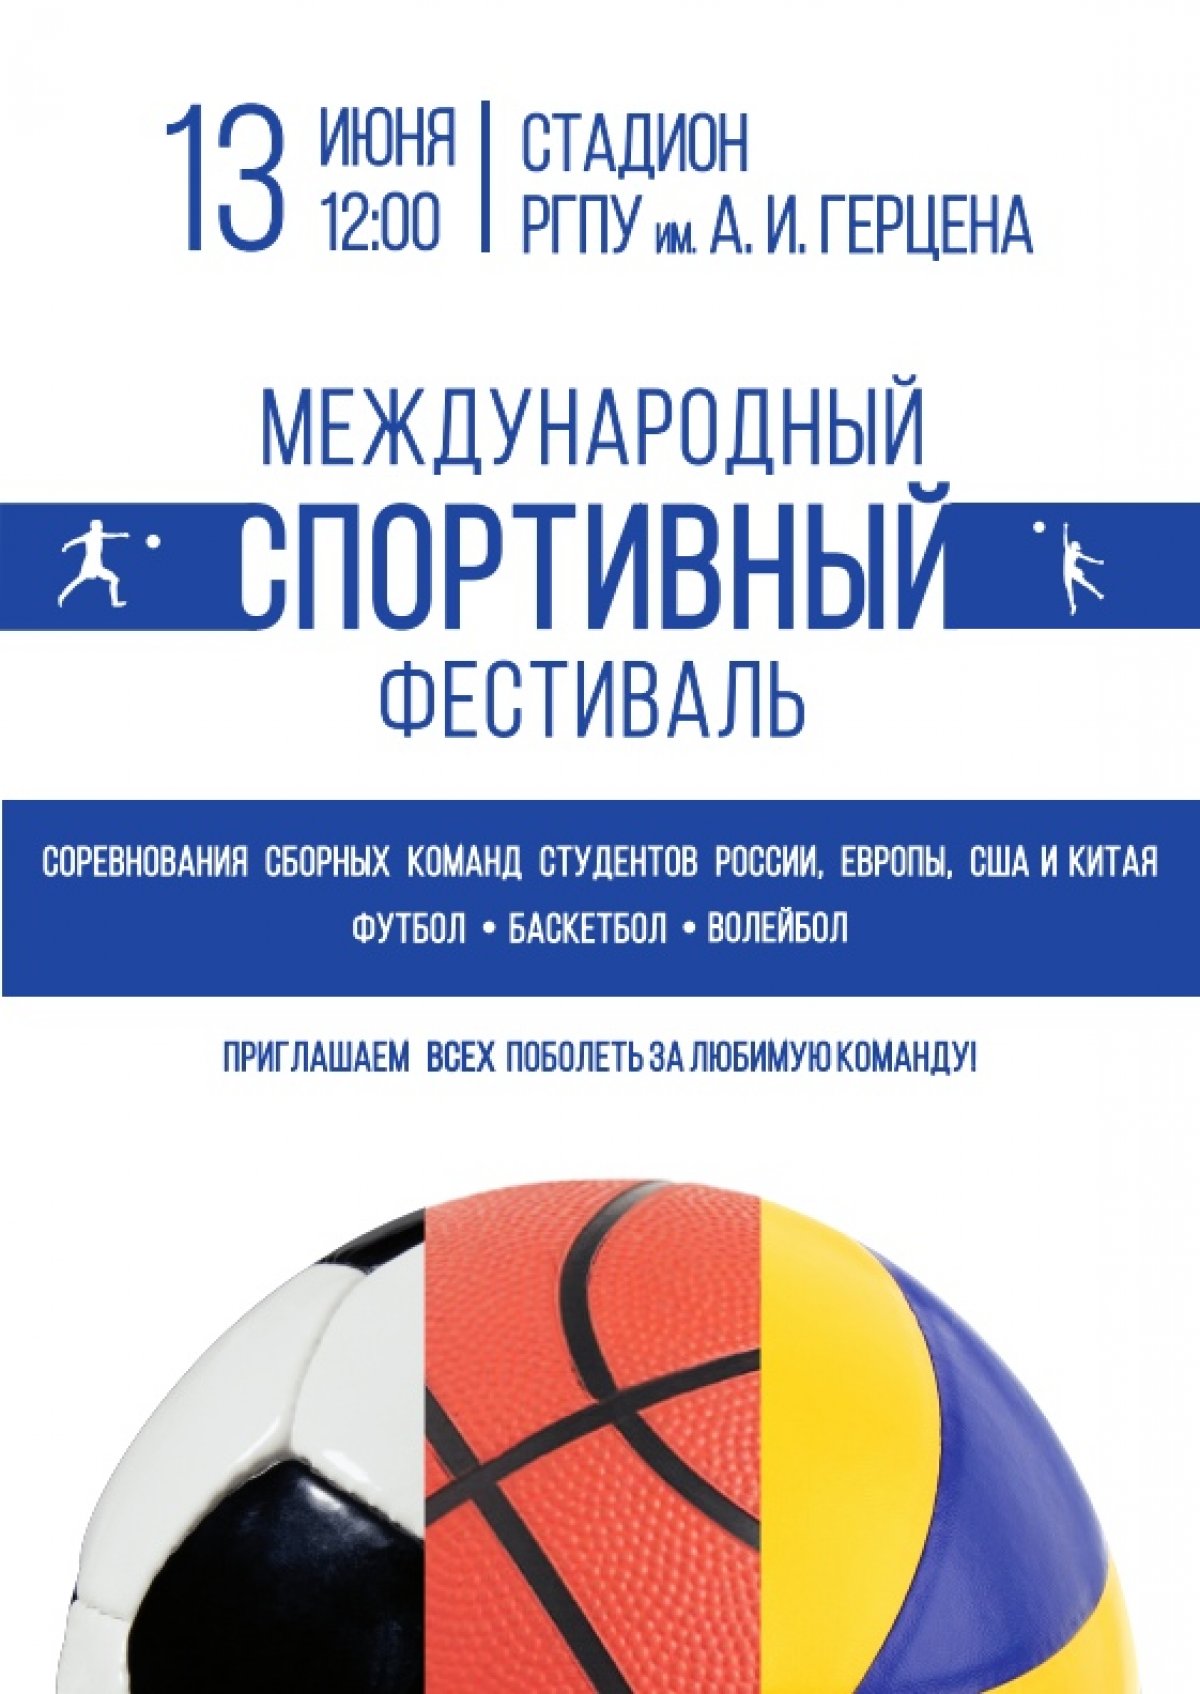 13 июня на стадионе Герценовского университета пройдет Международный спортивный фестиваль.